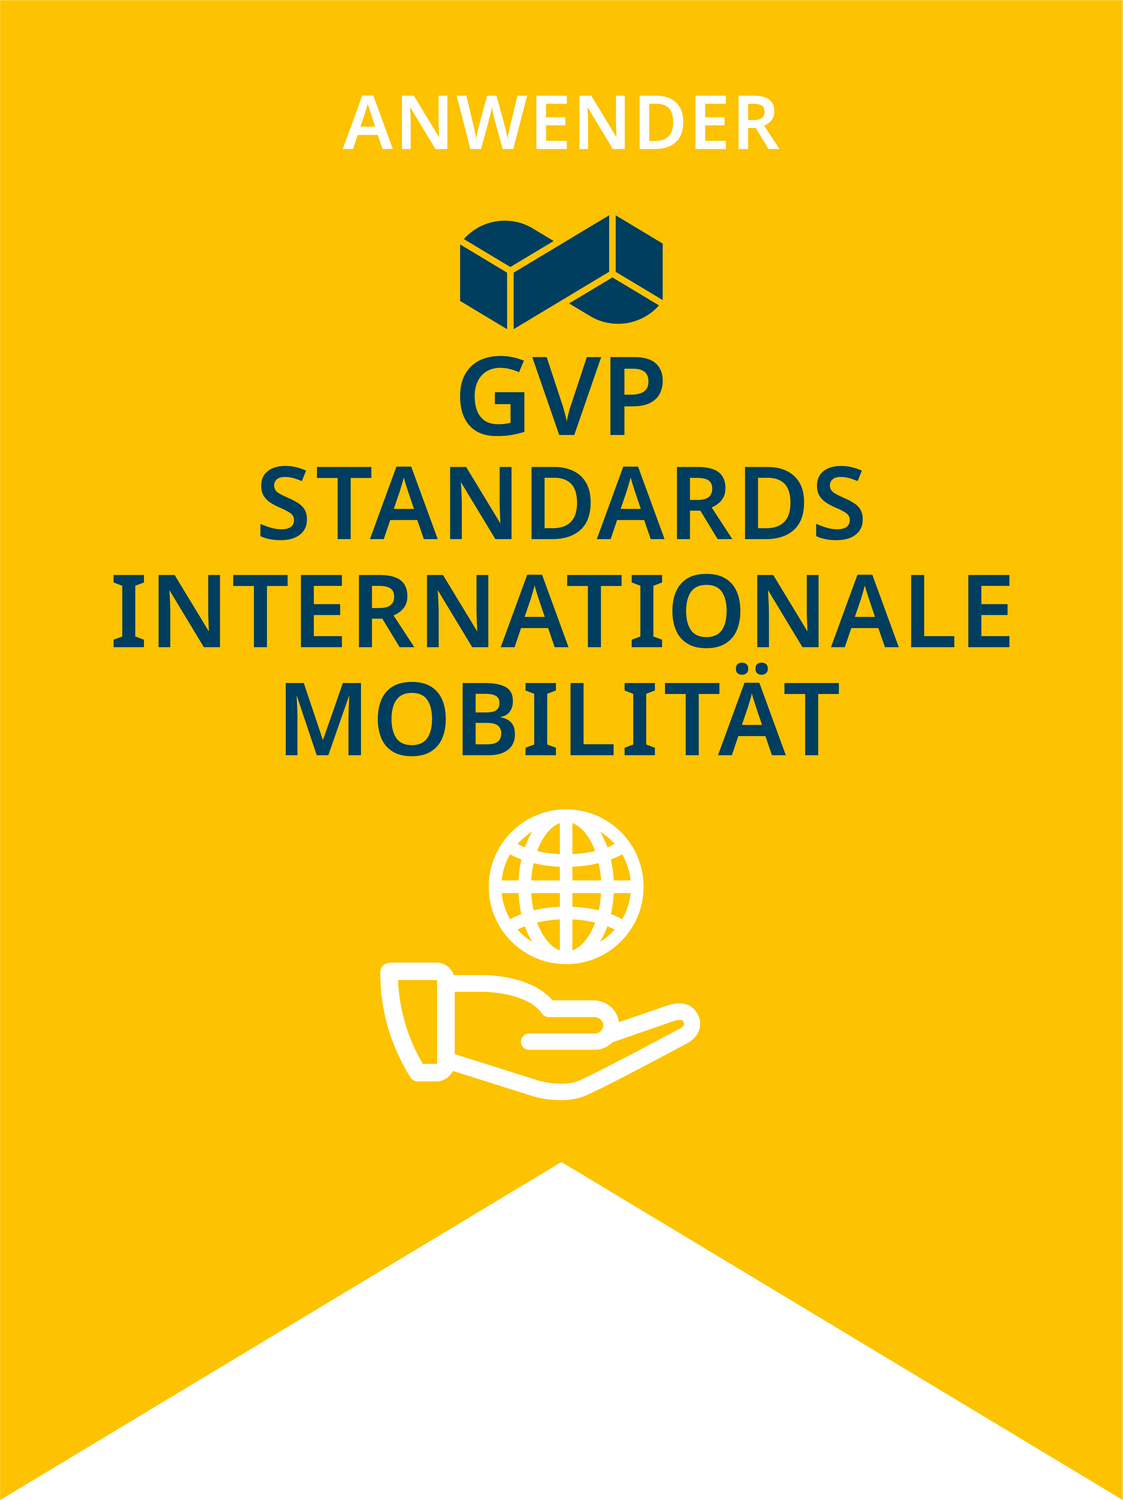 Qualitätsstandards in der Zeitarbeit (Internationale Mobilität)